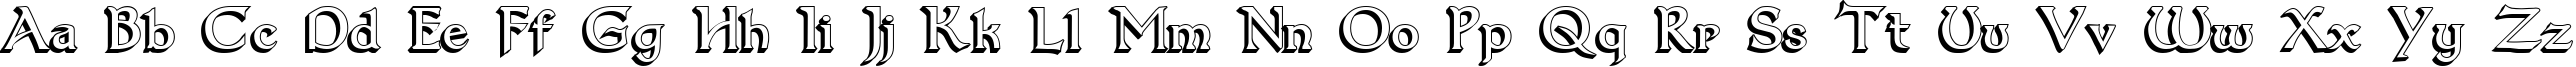 Пример написания английского алфавита шрифтом Dumbledor 1 3D